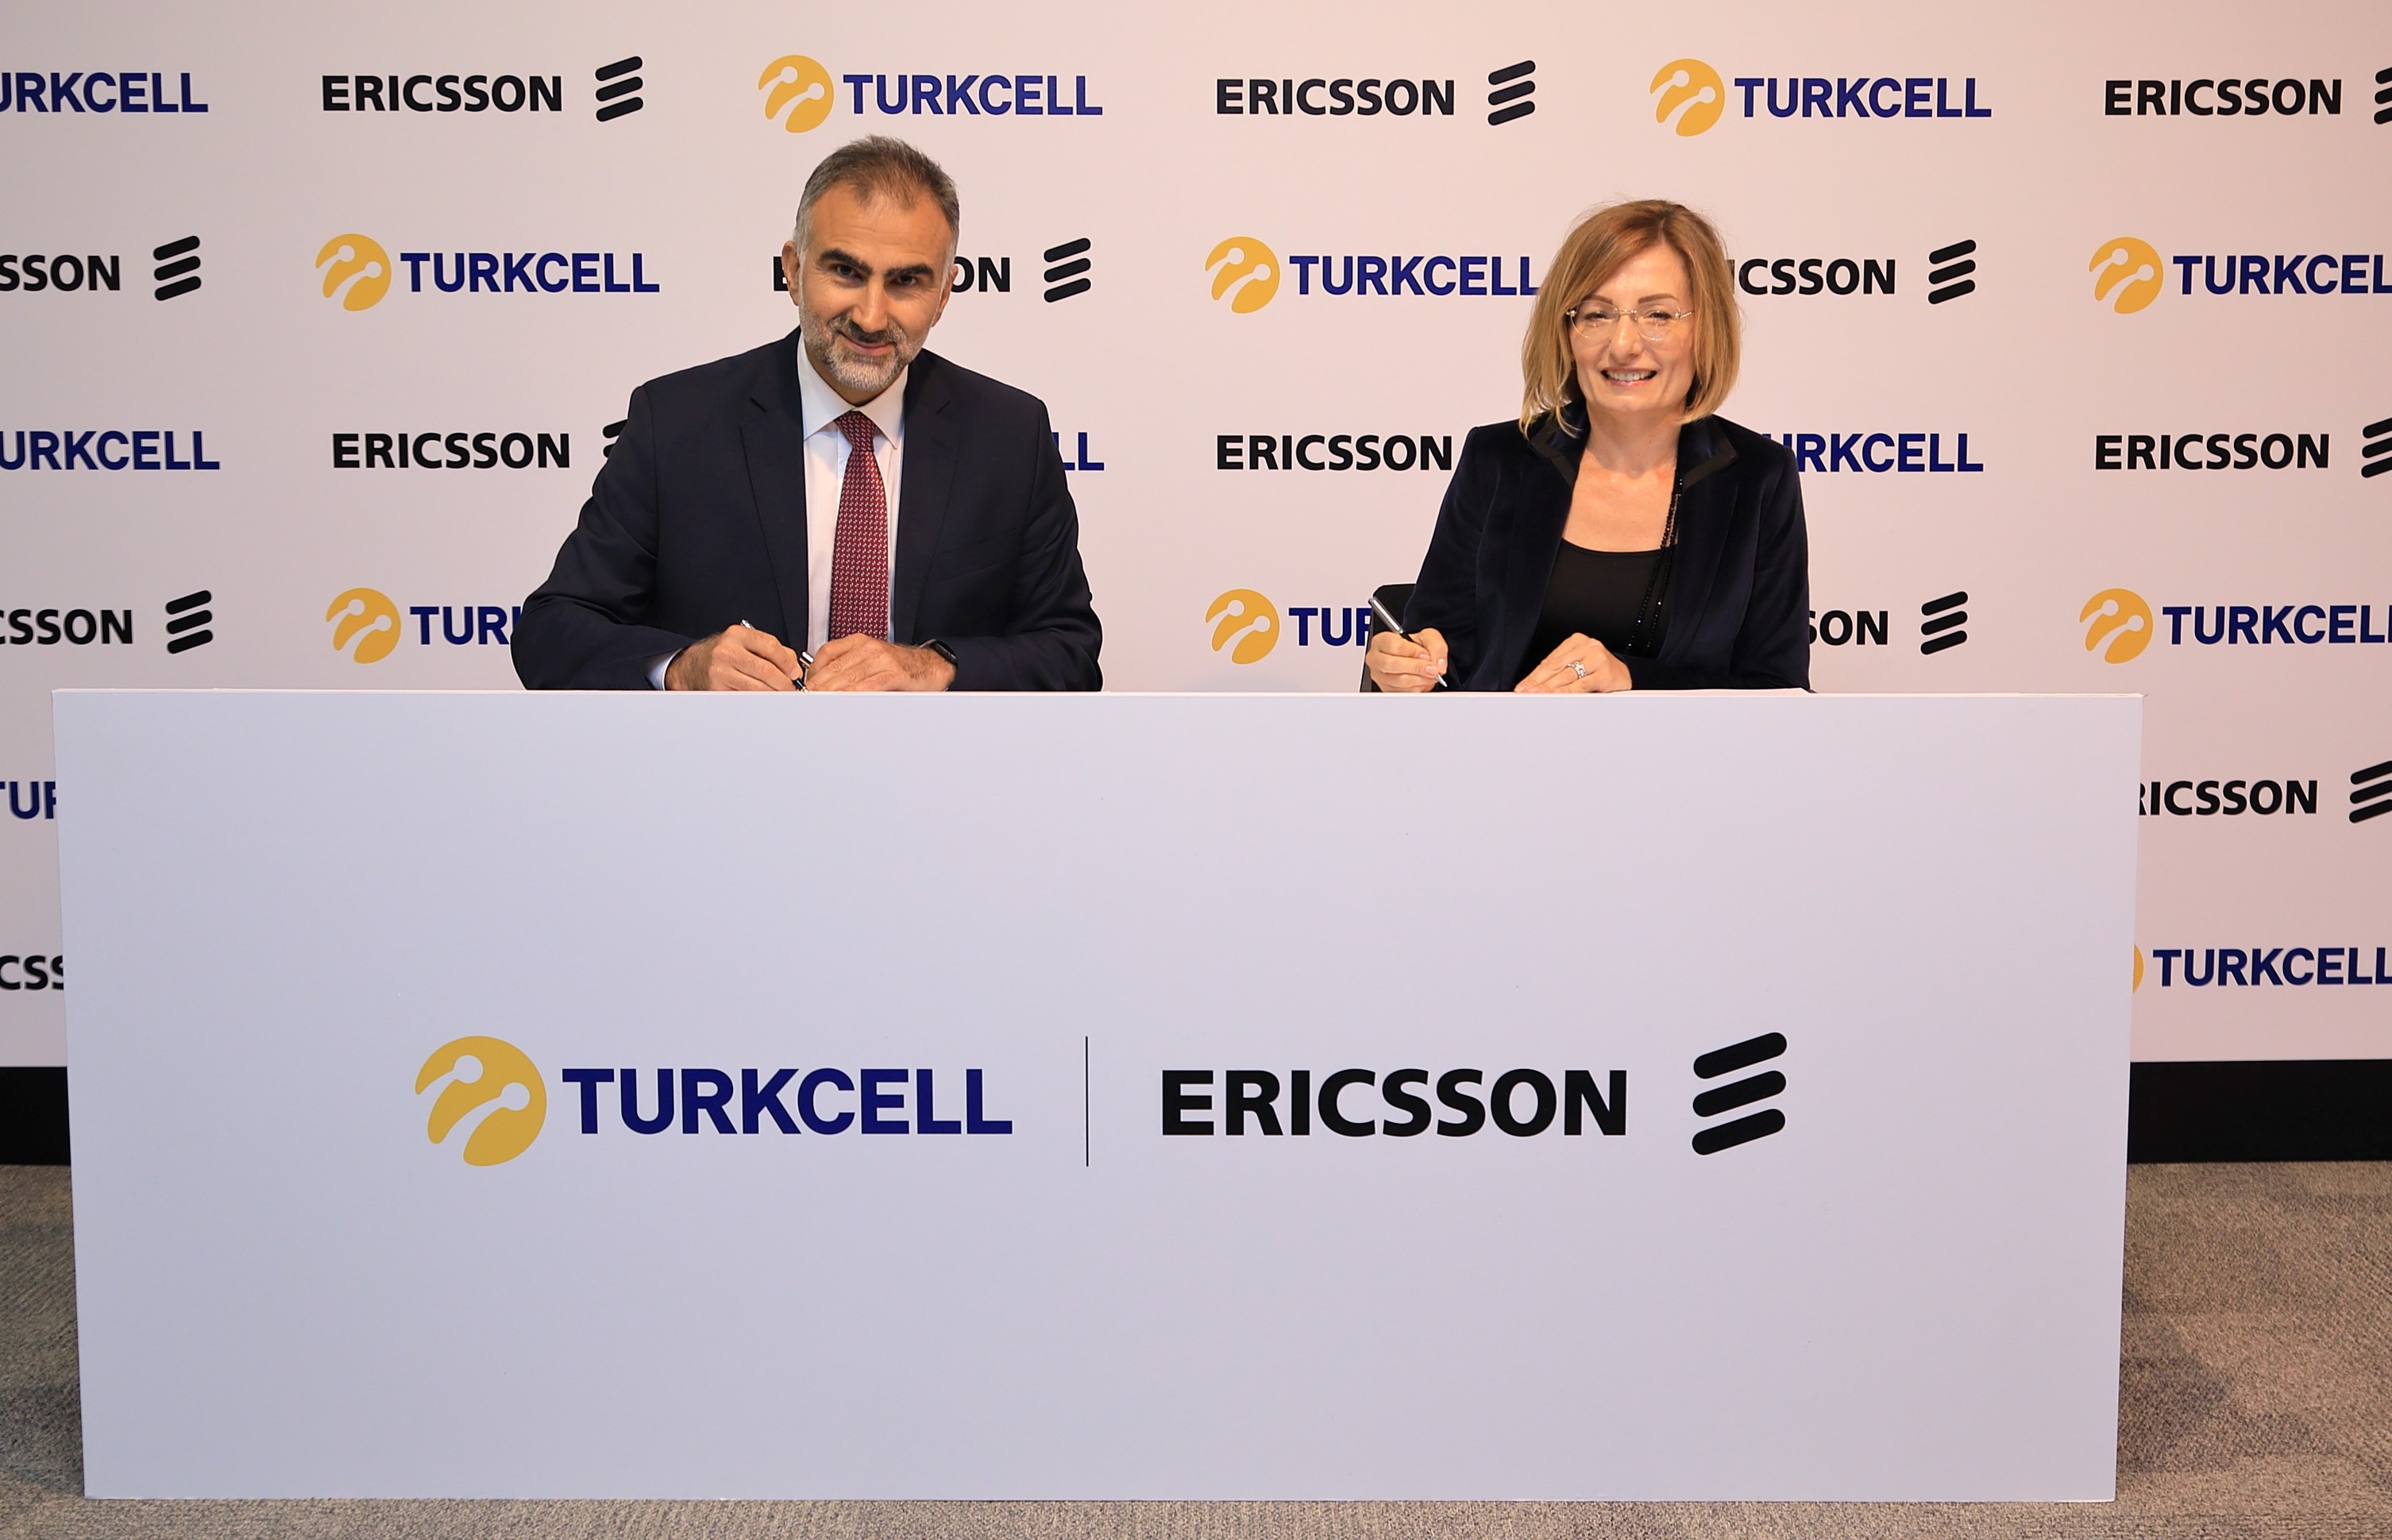 Turkcell ve Ericsson, 5G teknolojisi alanında işbirliği anlaşması imzaladı